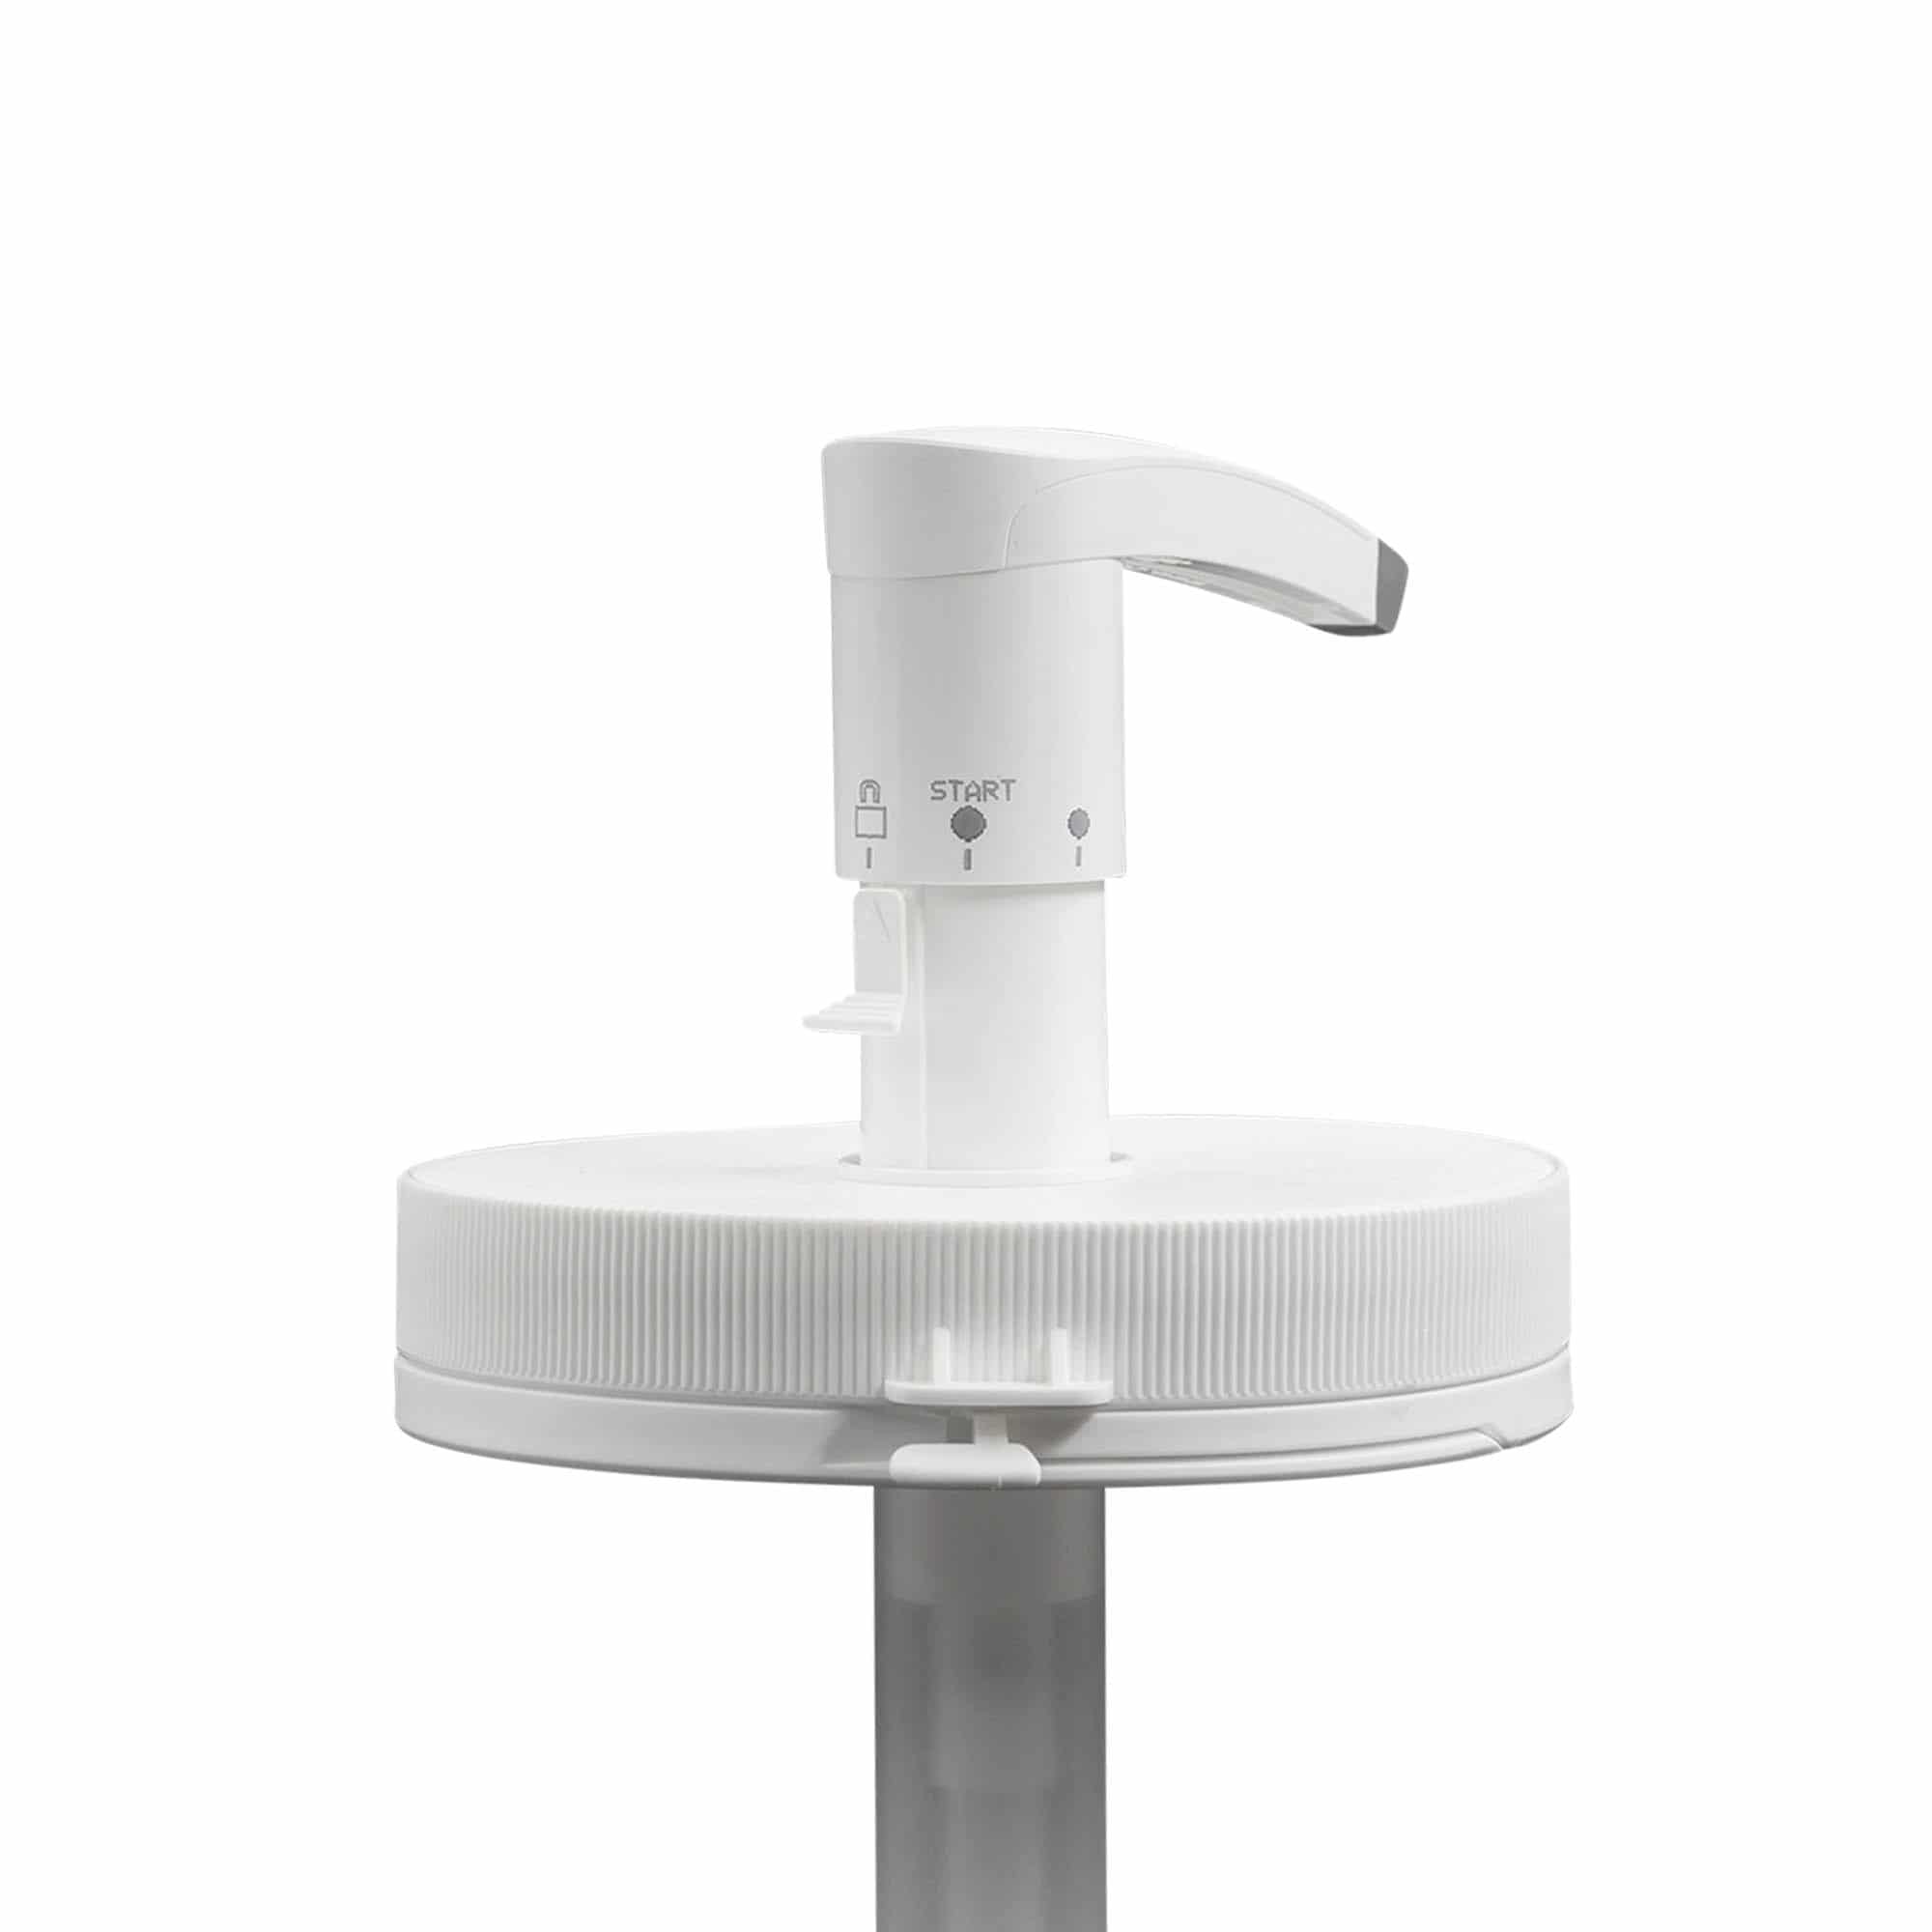 Dispenser pump for 1,240 ml 'Securibox', PE plastic, white, for opening: screw cap